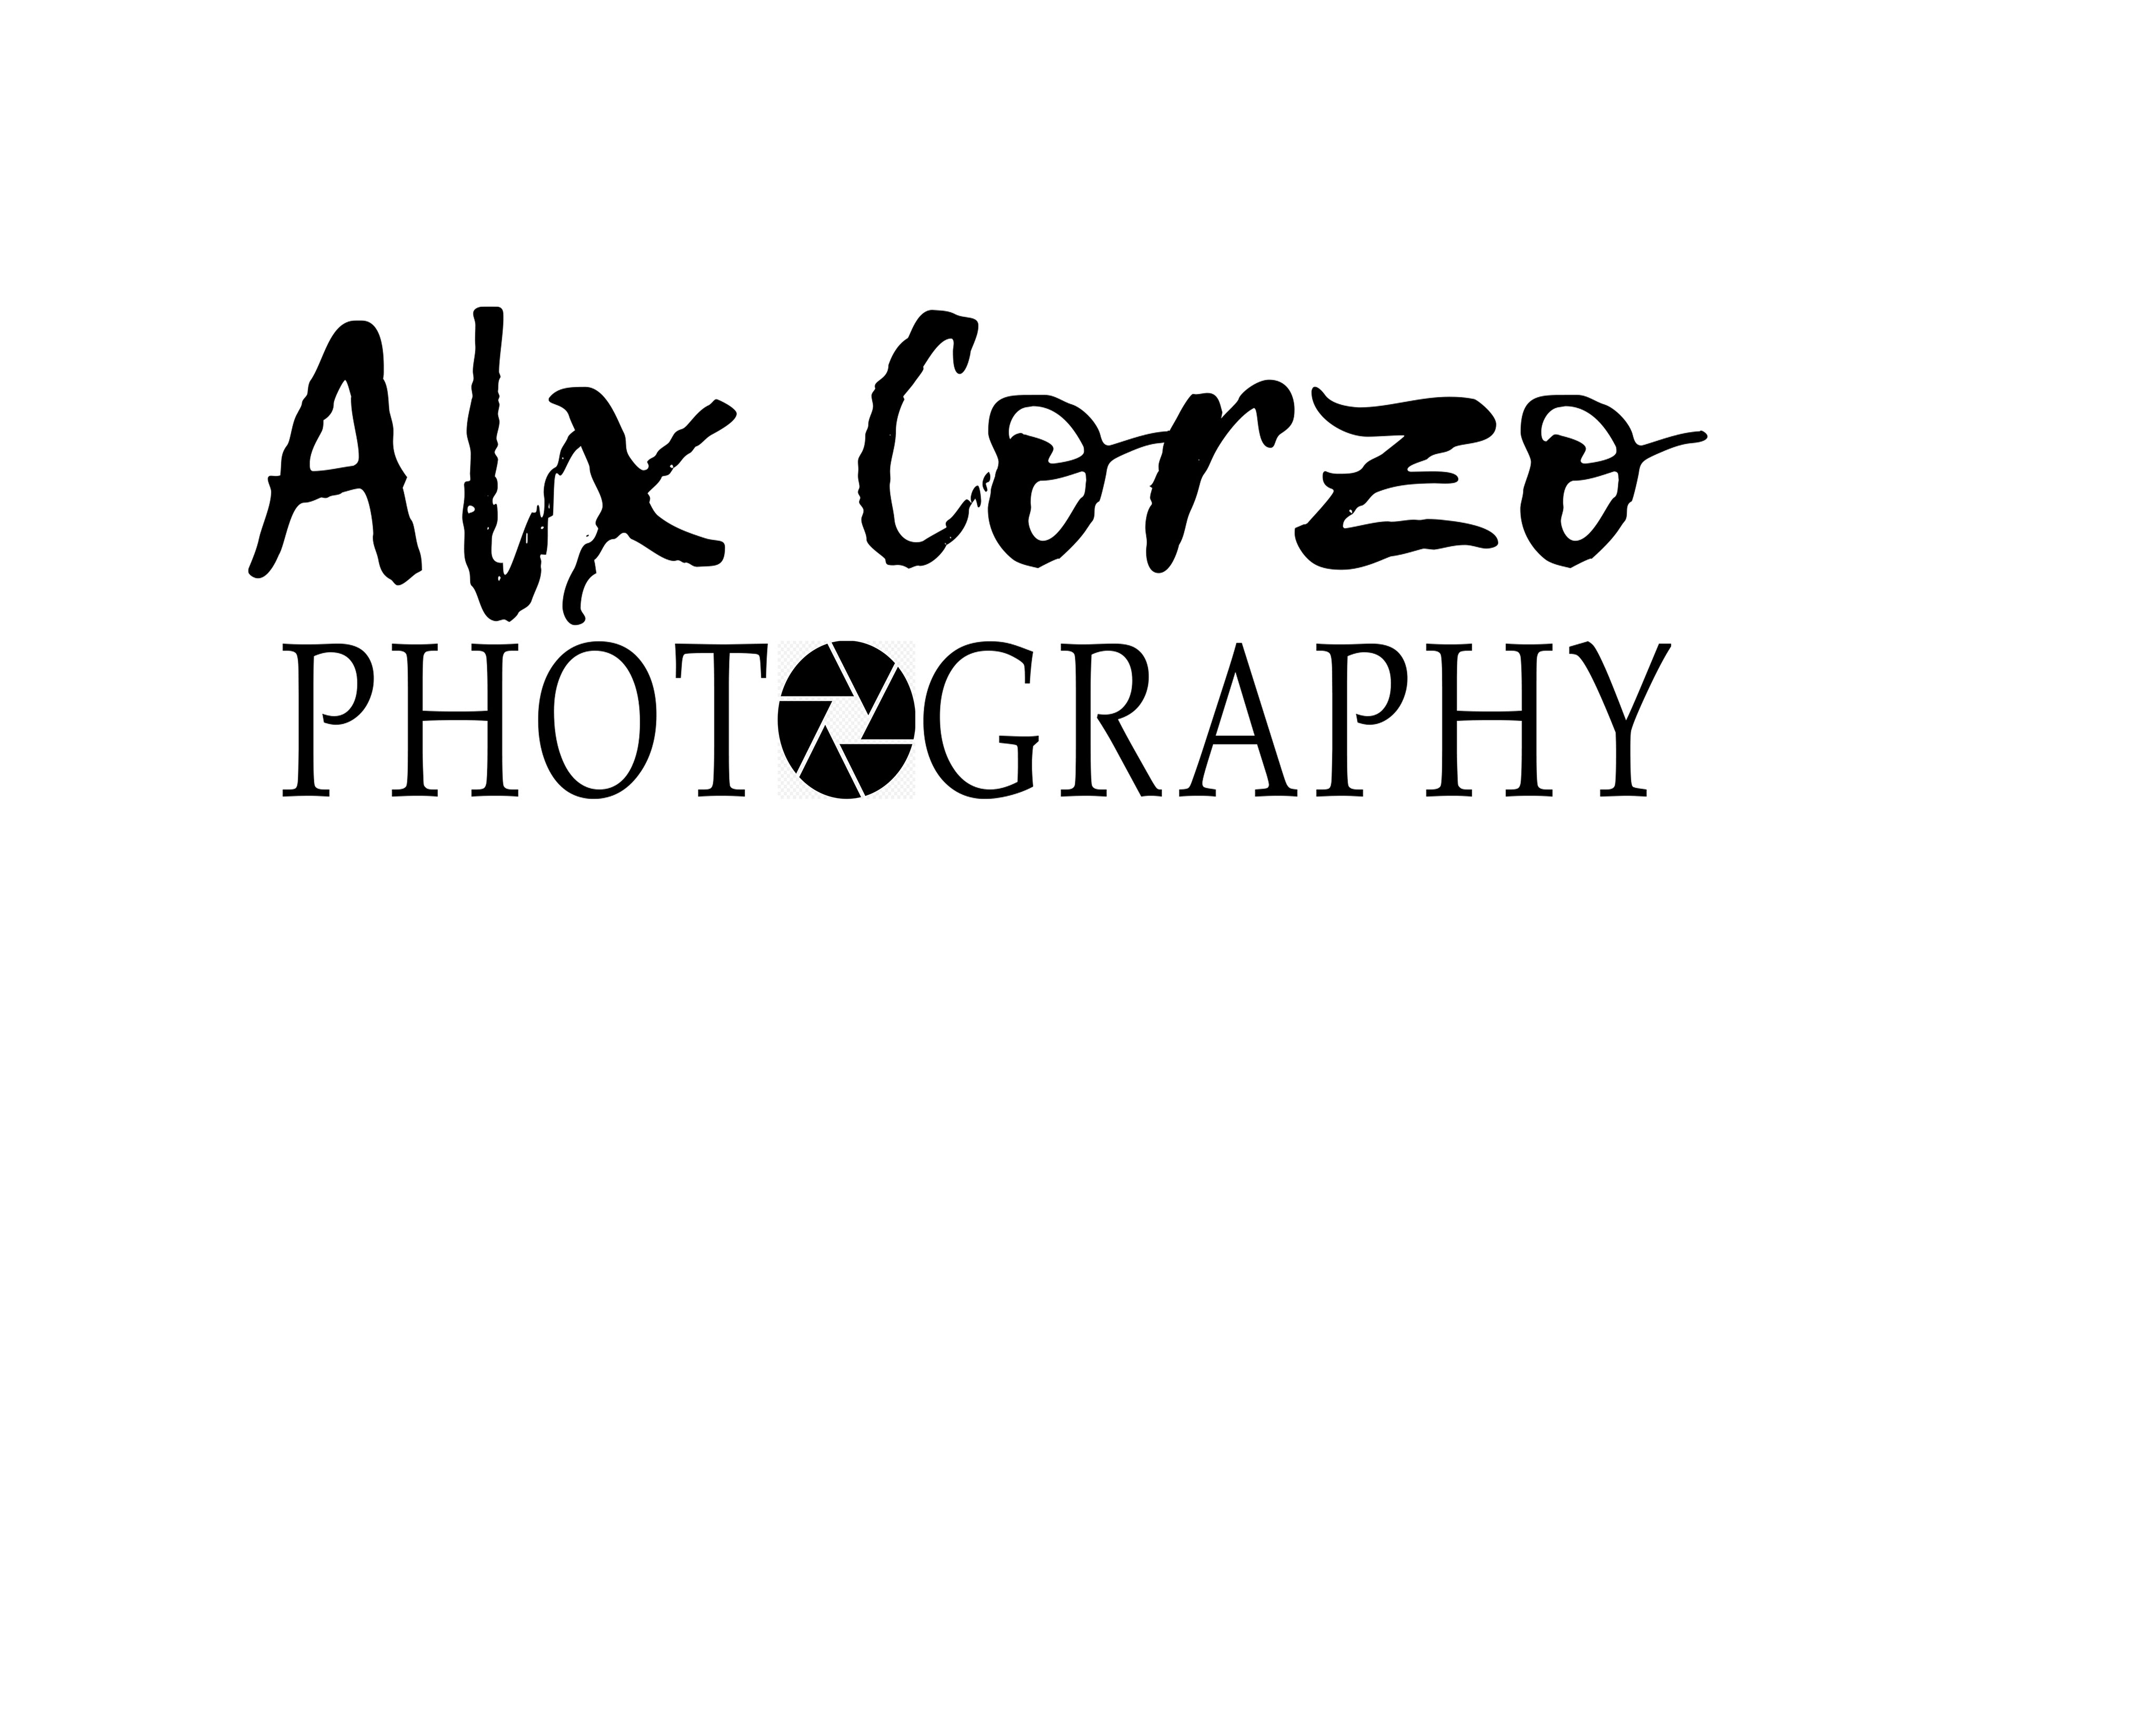 Alex Corzo